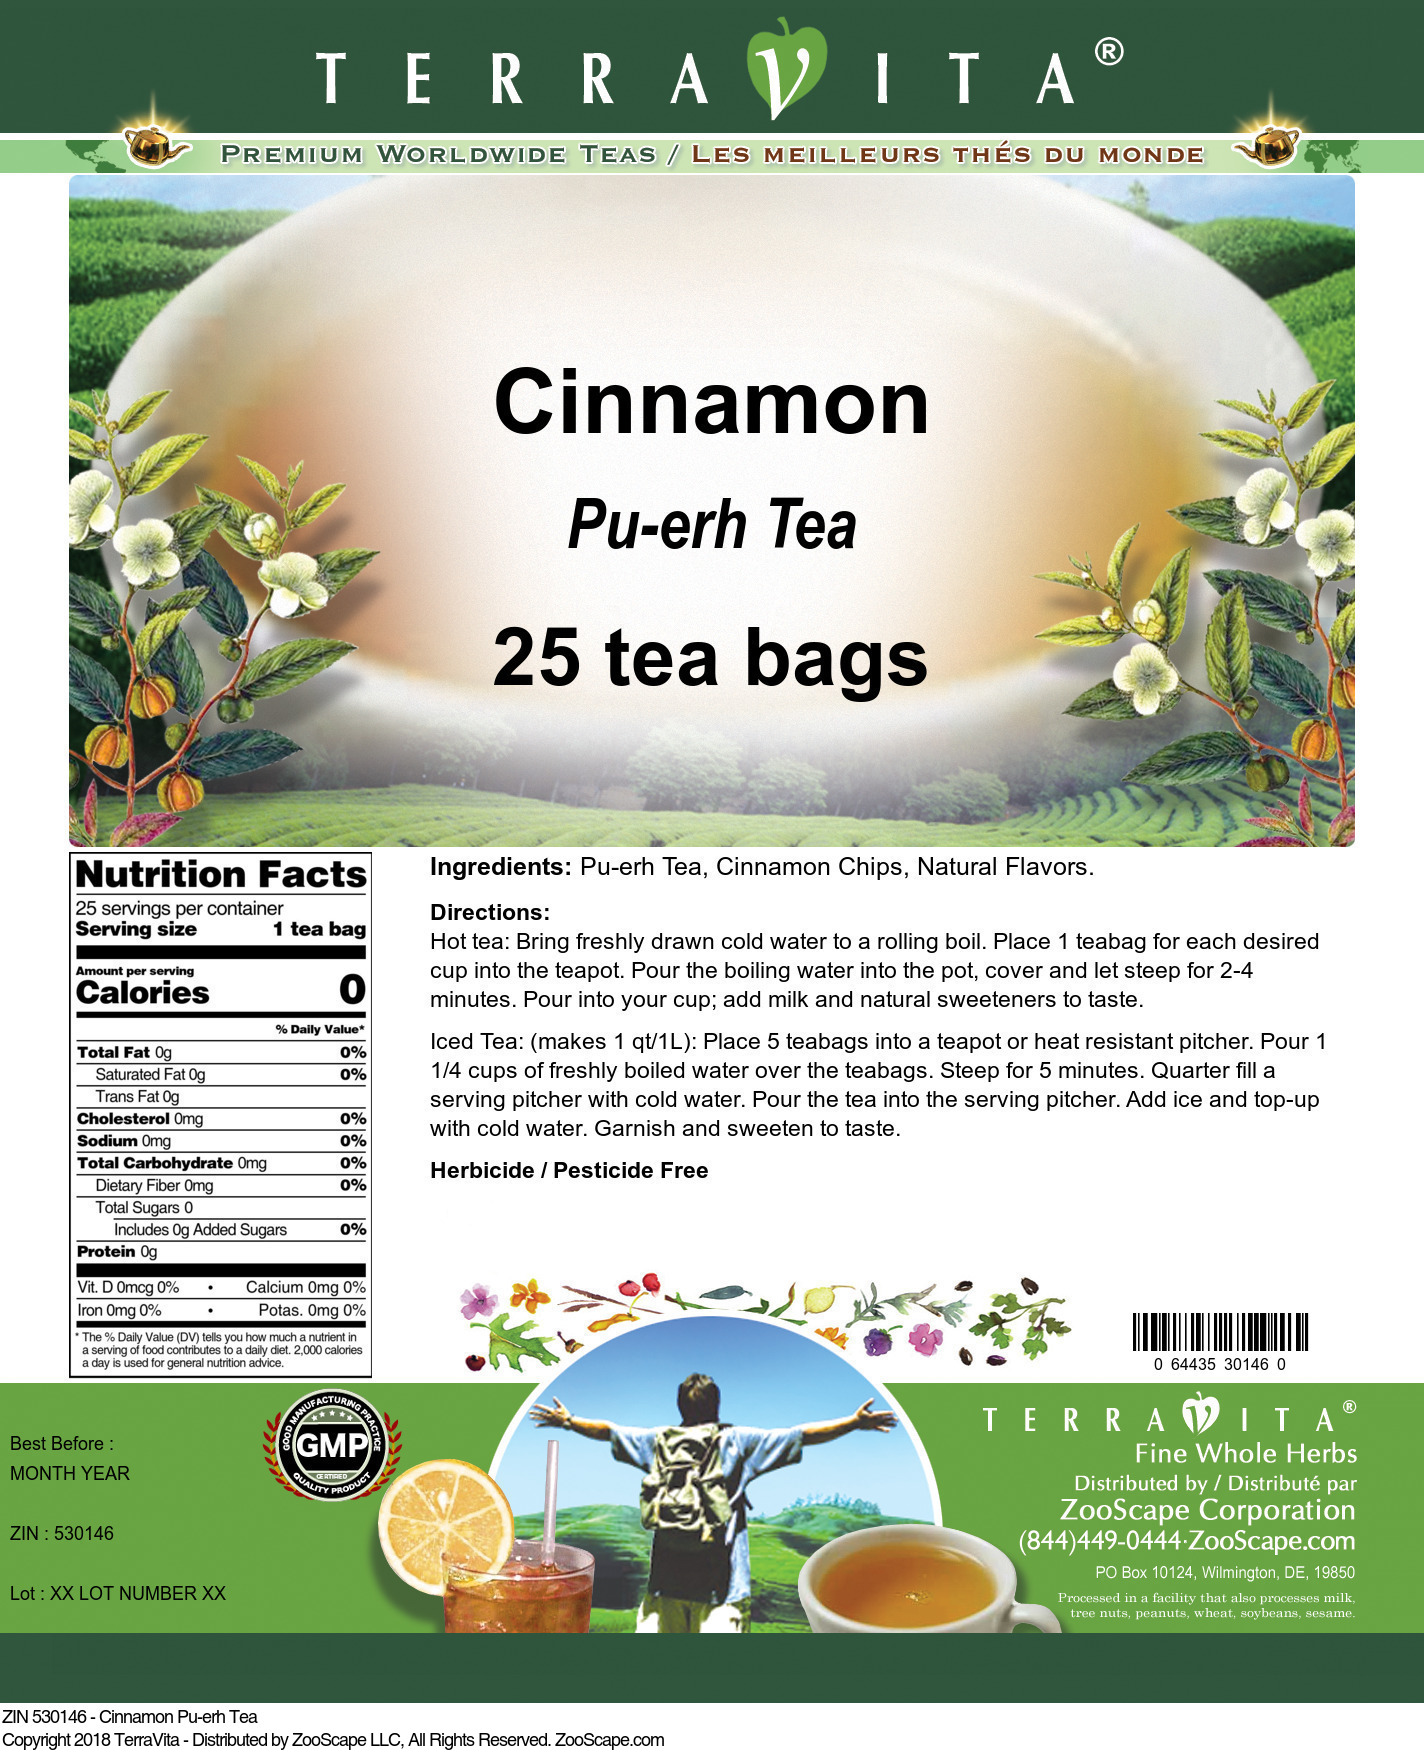 Cinnamon Pu-erh Tea - Label